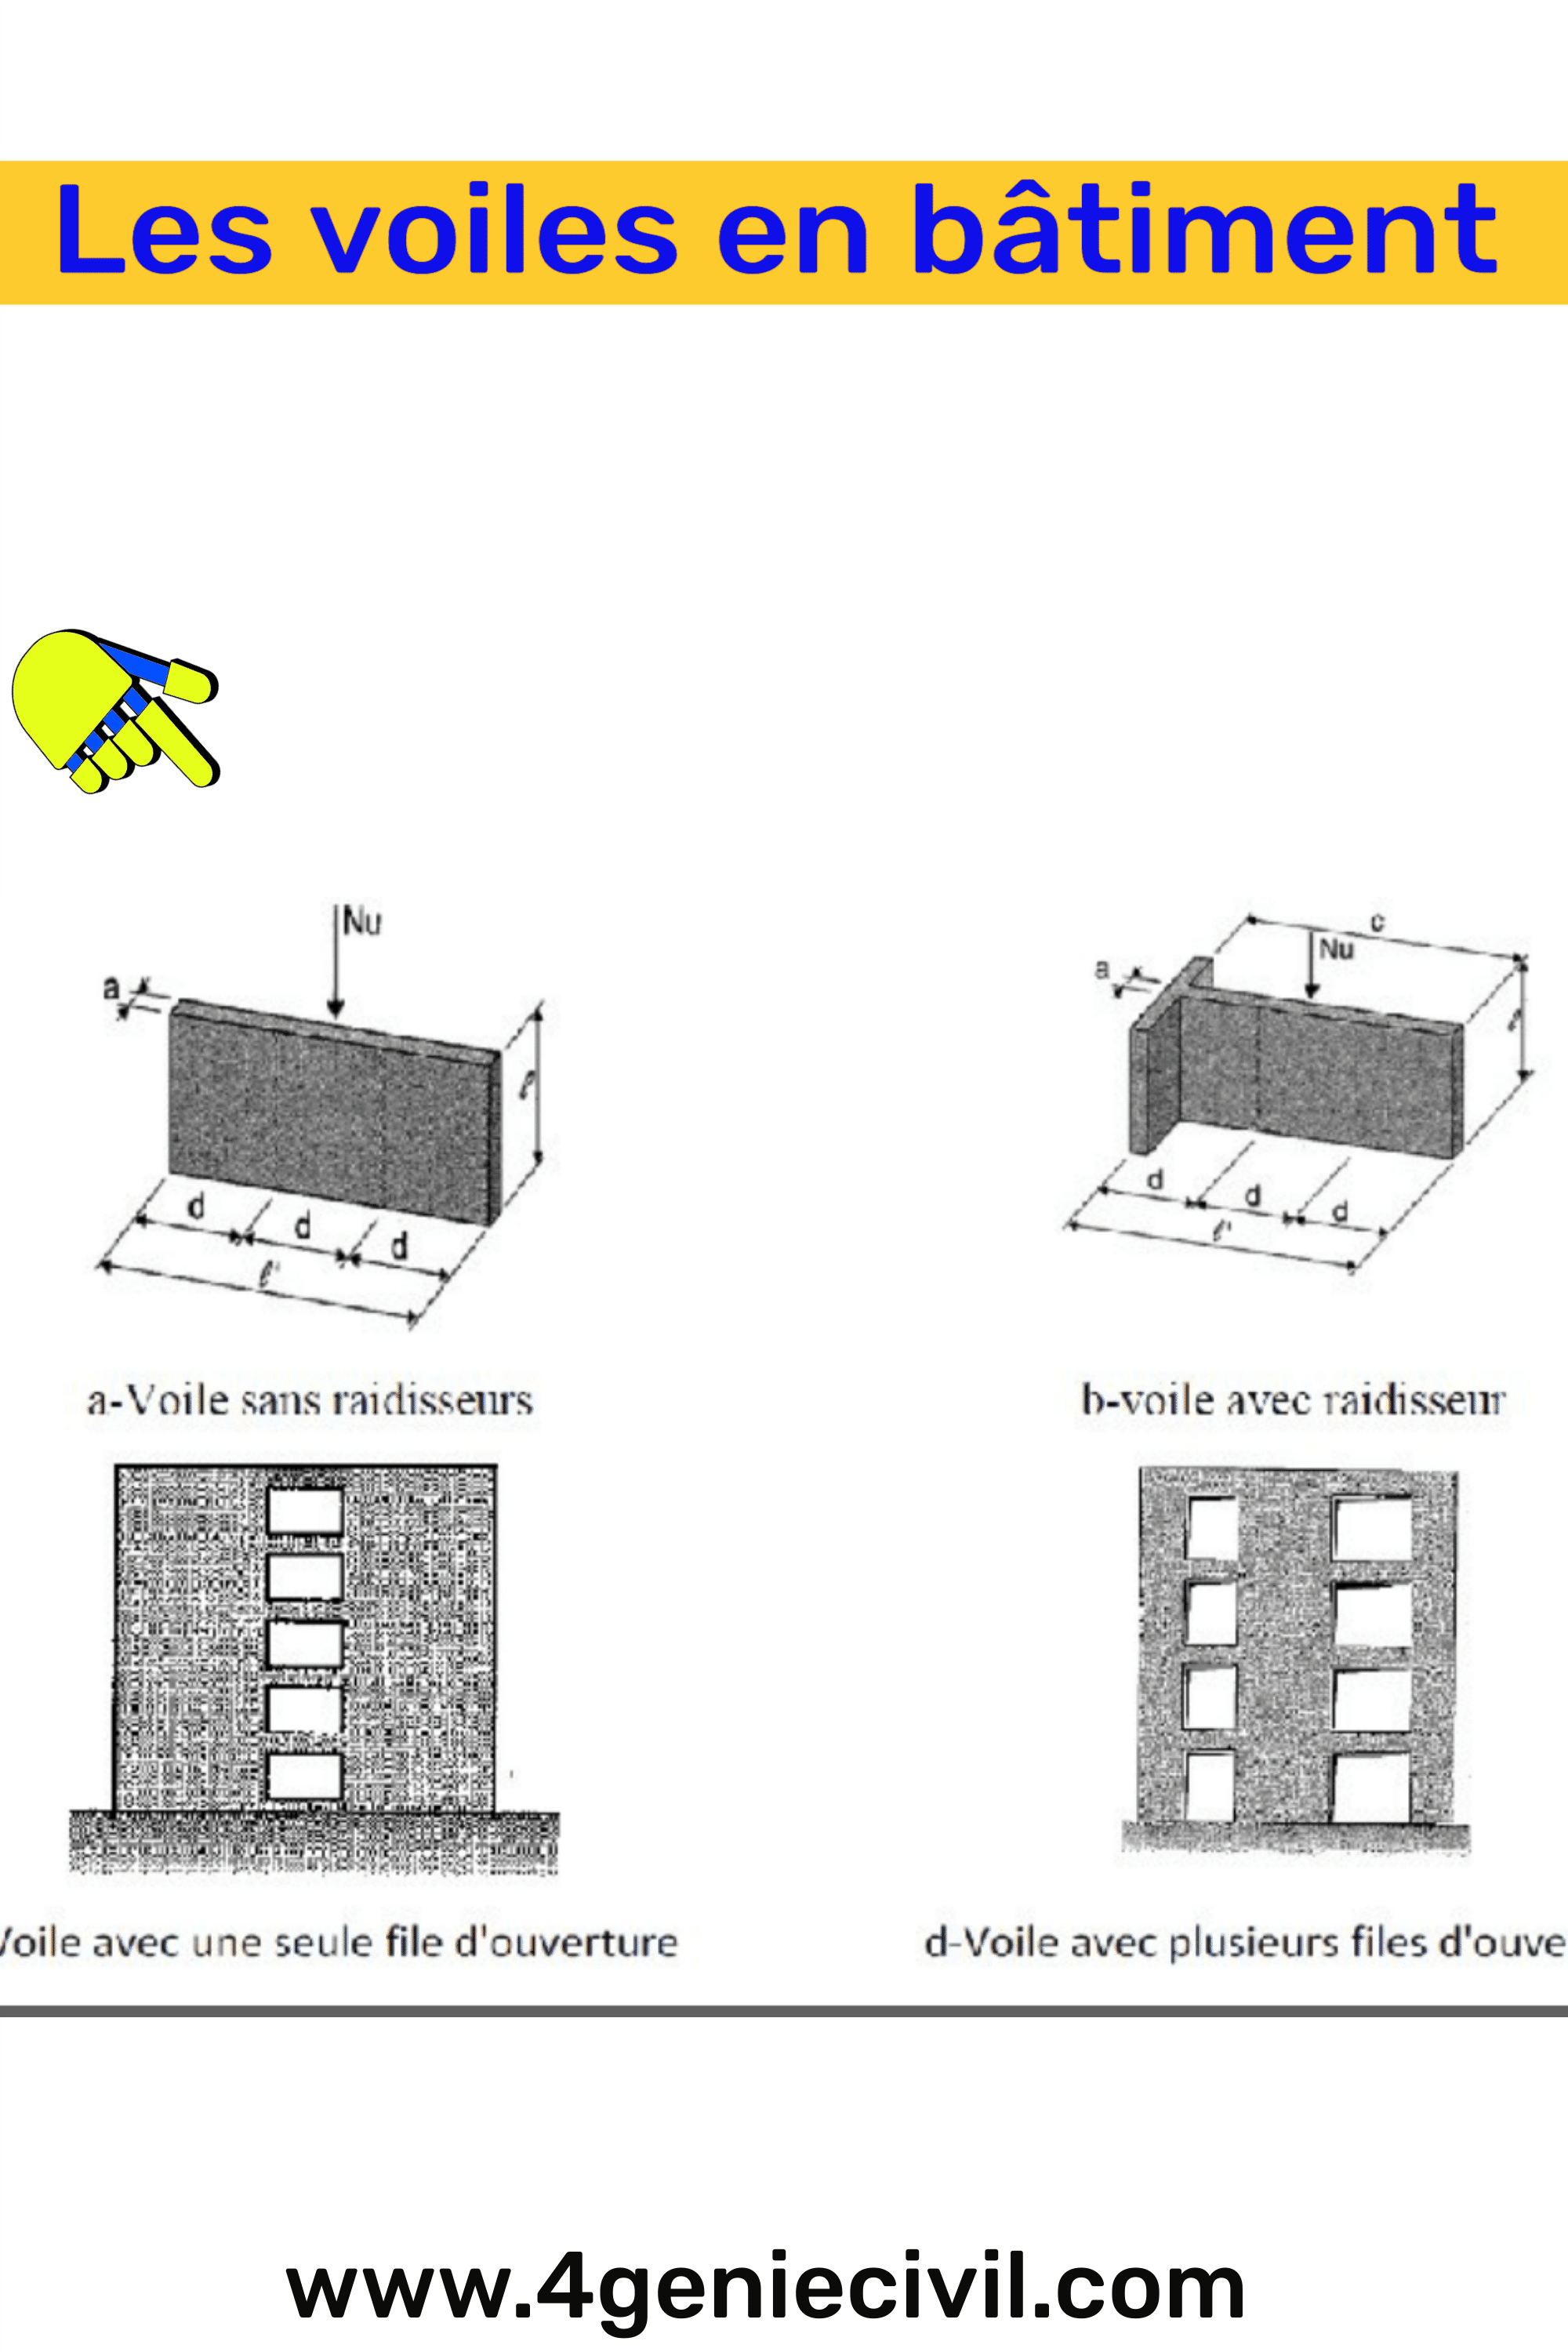 Les voiles dans le bâtiment sont des éléments verticaux qui jouent un rôle essentiel dans la stabilité et la résistance des structures